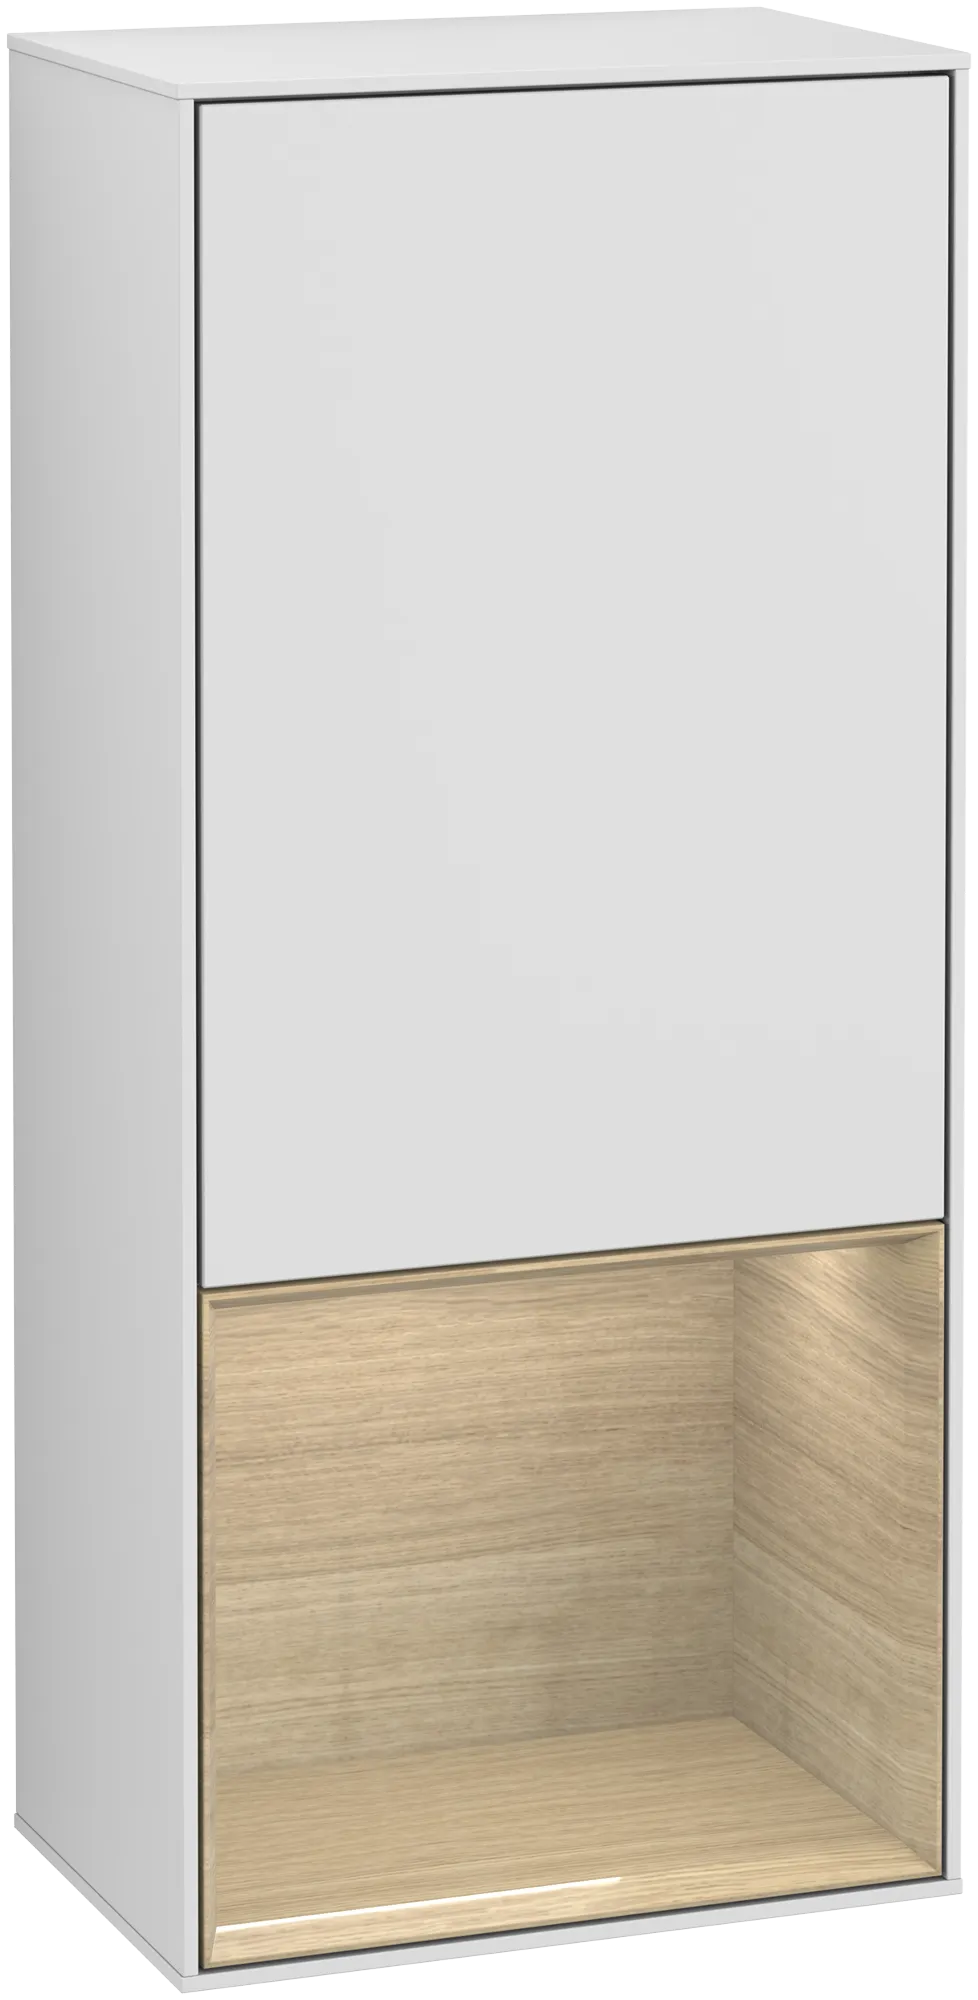 Bild von VILLEROY BOCH Finion Seitenschrank, mit Beleuchtung, 1 Tür, 418 x 936 x 270 mm, White Matt Lacquer / Oak Veneer #G550PCMT